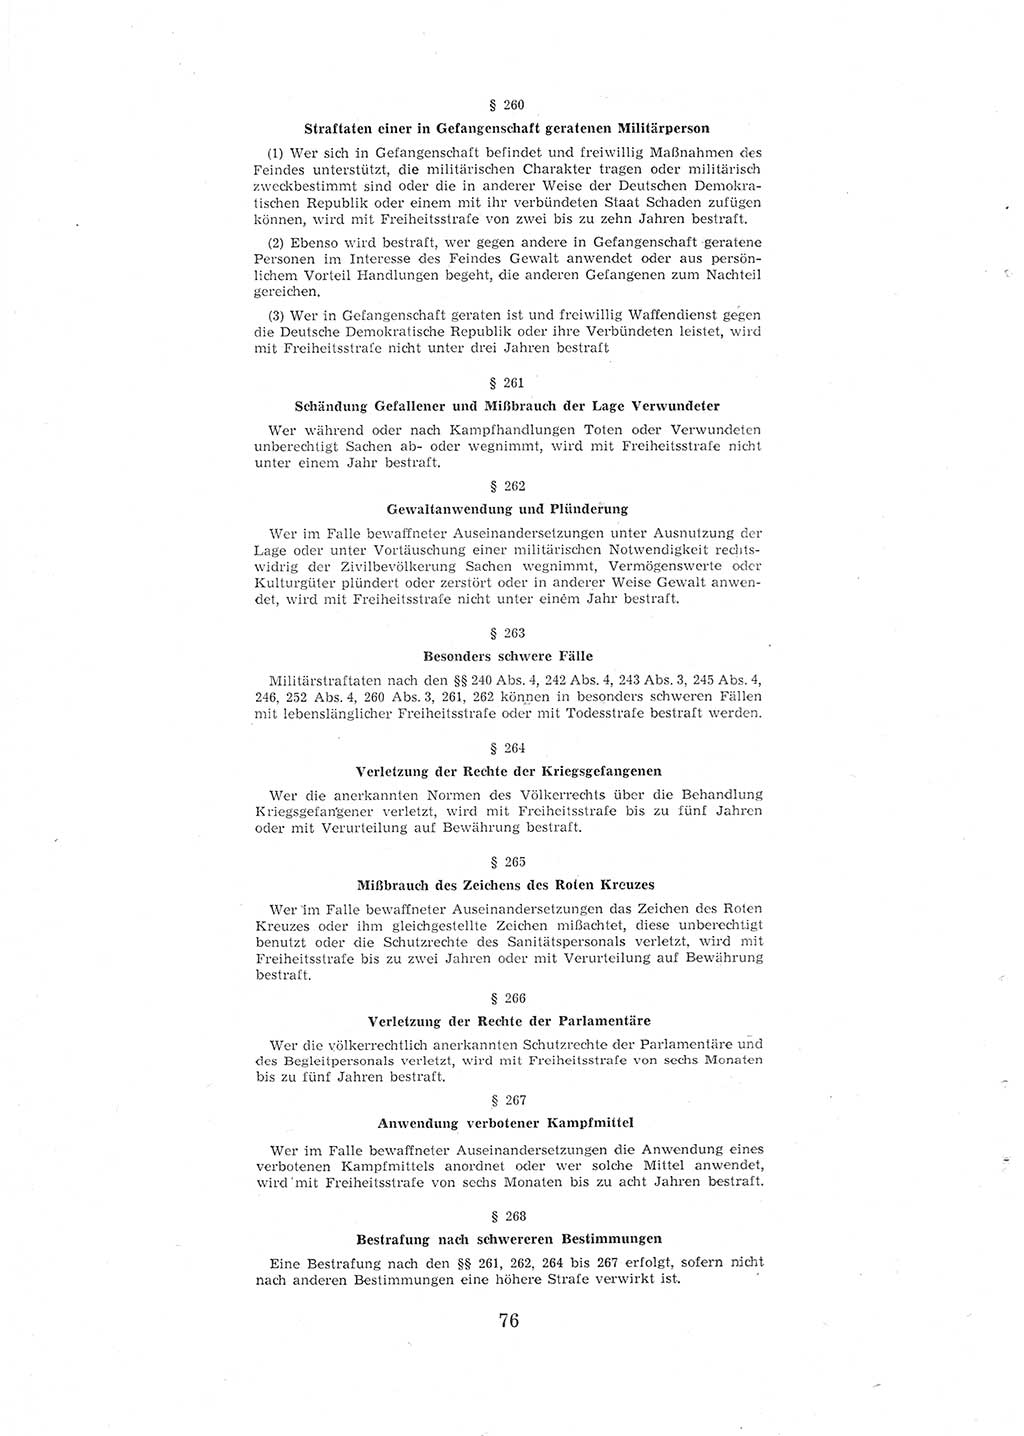 Entwurf des Strafgesetzbuches (StGB) der Deutschen Demokratischen Republik (DDR) 1967, Seite 76 (Entw. StGB DDR 1967, S. 76)